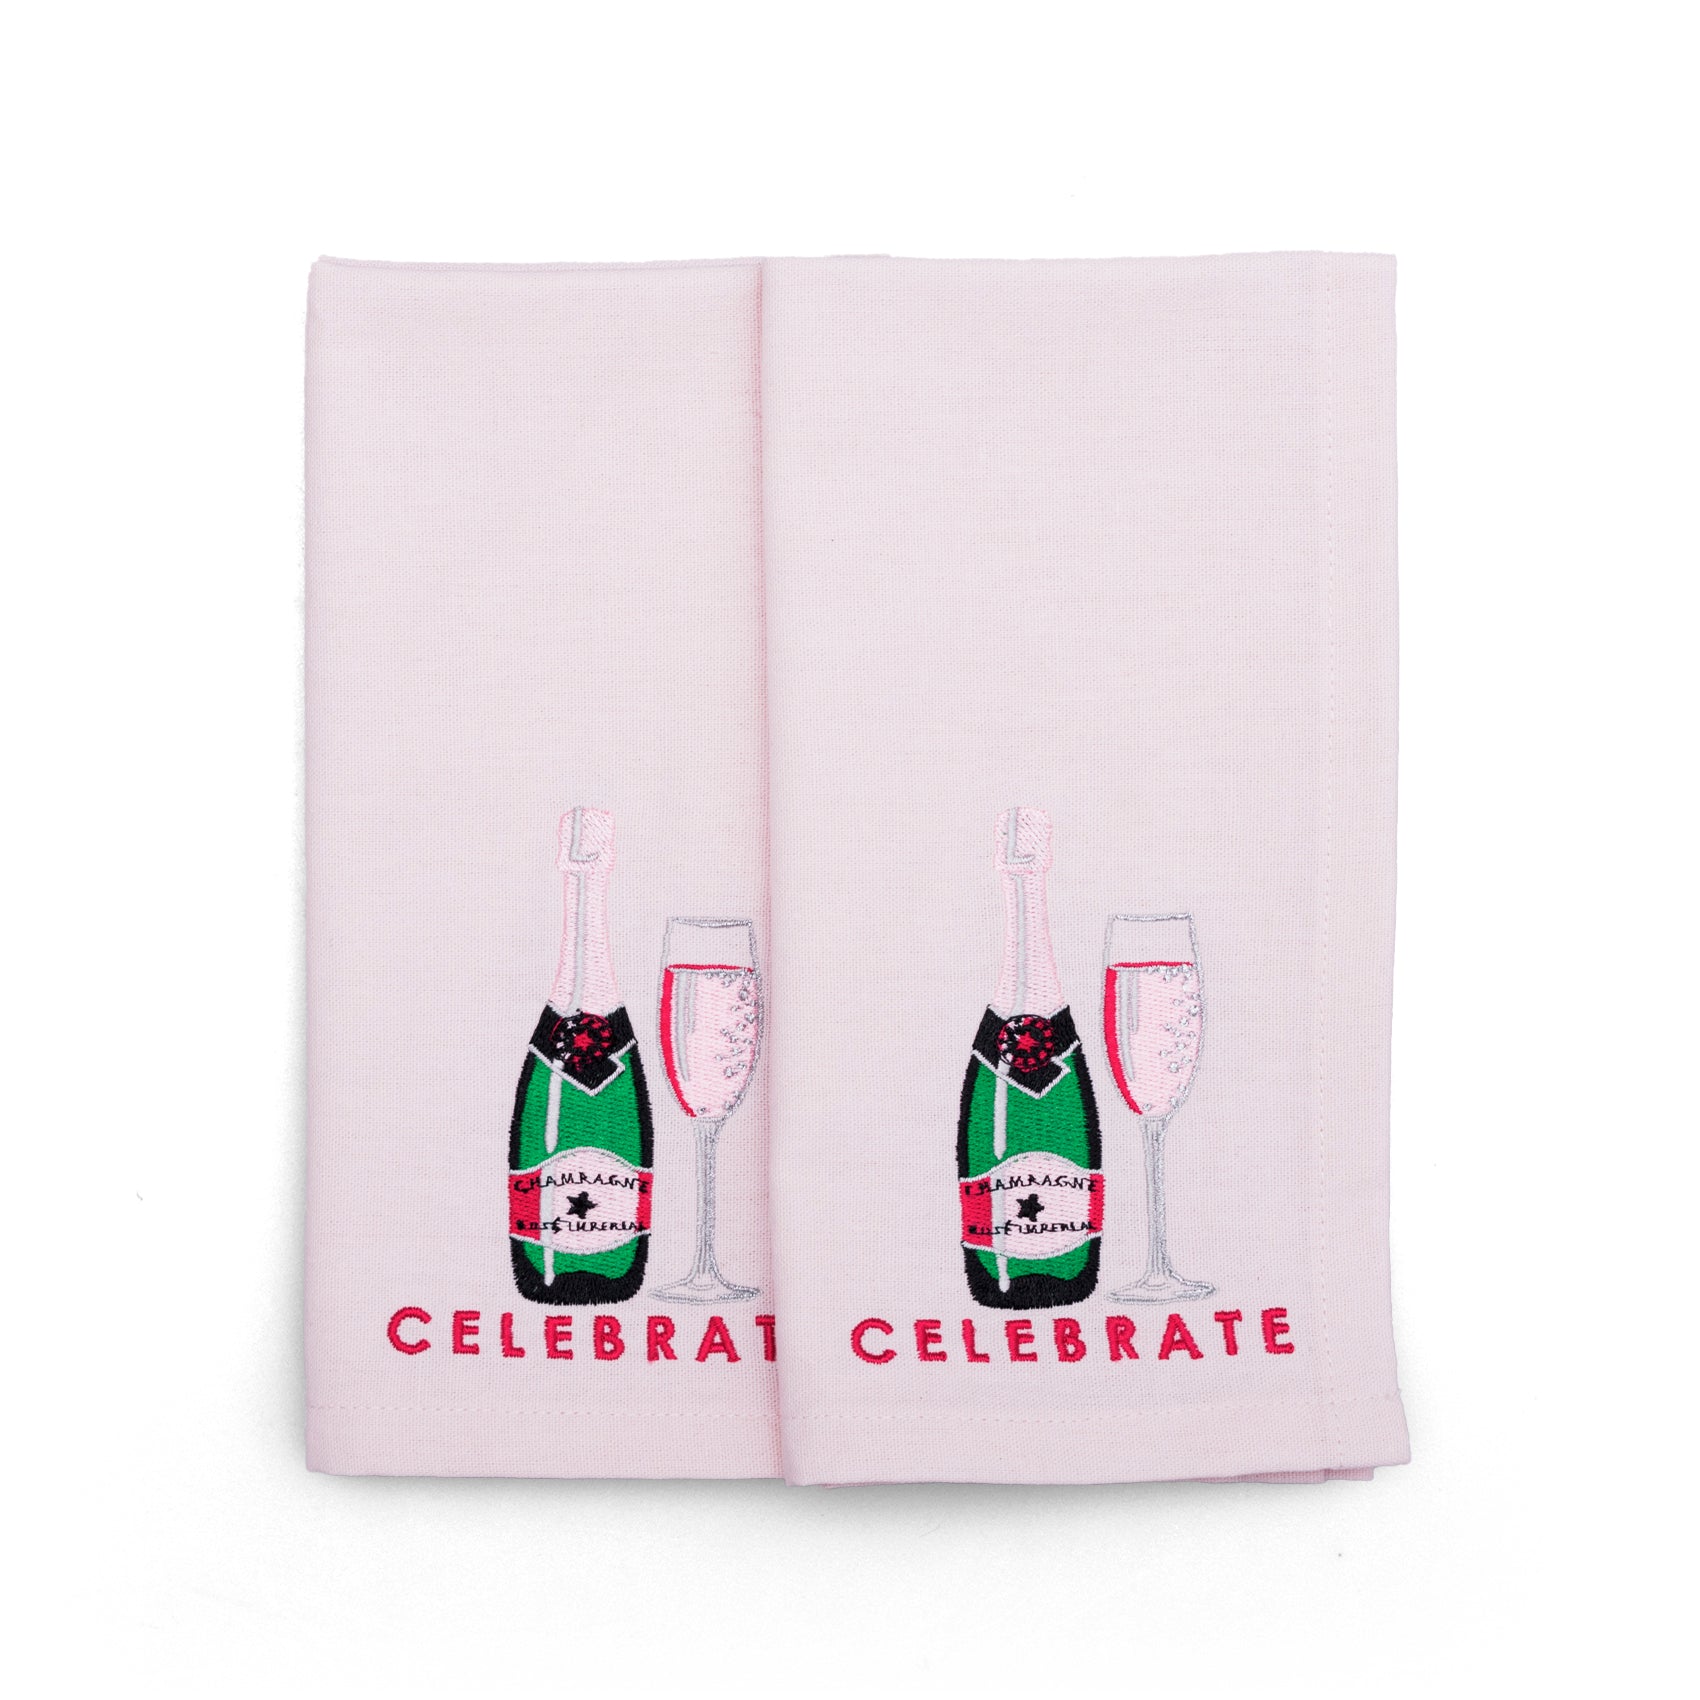 Vondels - Katoenen servetten CELEBRATE Roze (set van 2) - RUBY Conceptstore 